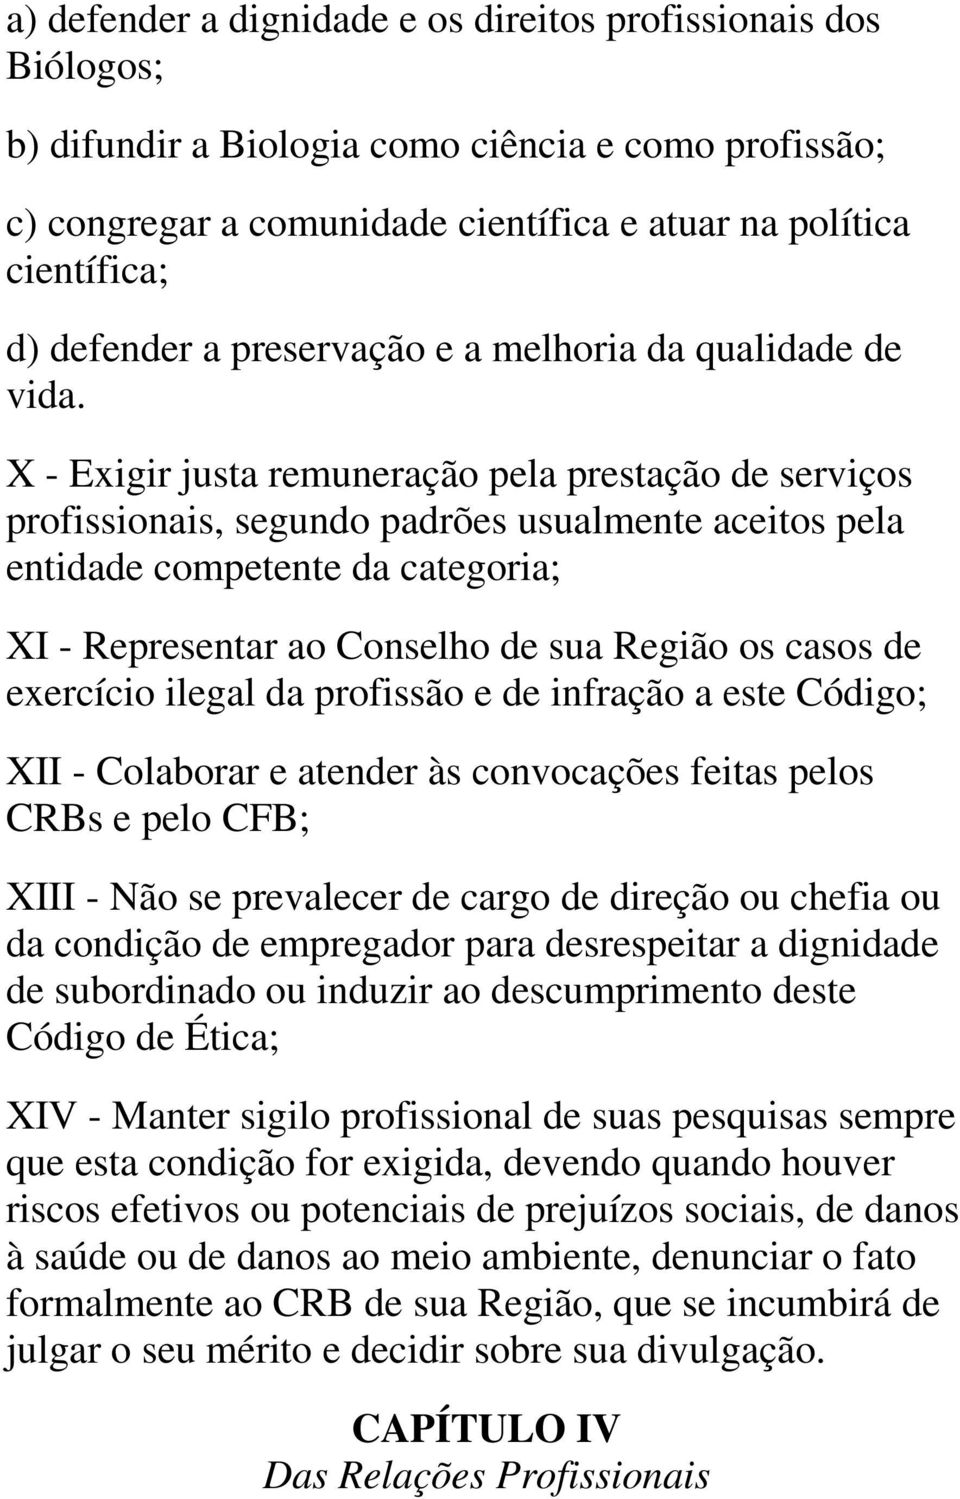 X - Exigir justa remuneração pela prestação de serviços profissionais, segundo padrões usualmente aceitos pela entidade competente da categoria; XI - Representar ao Conselho de sua Região os casos de